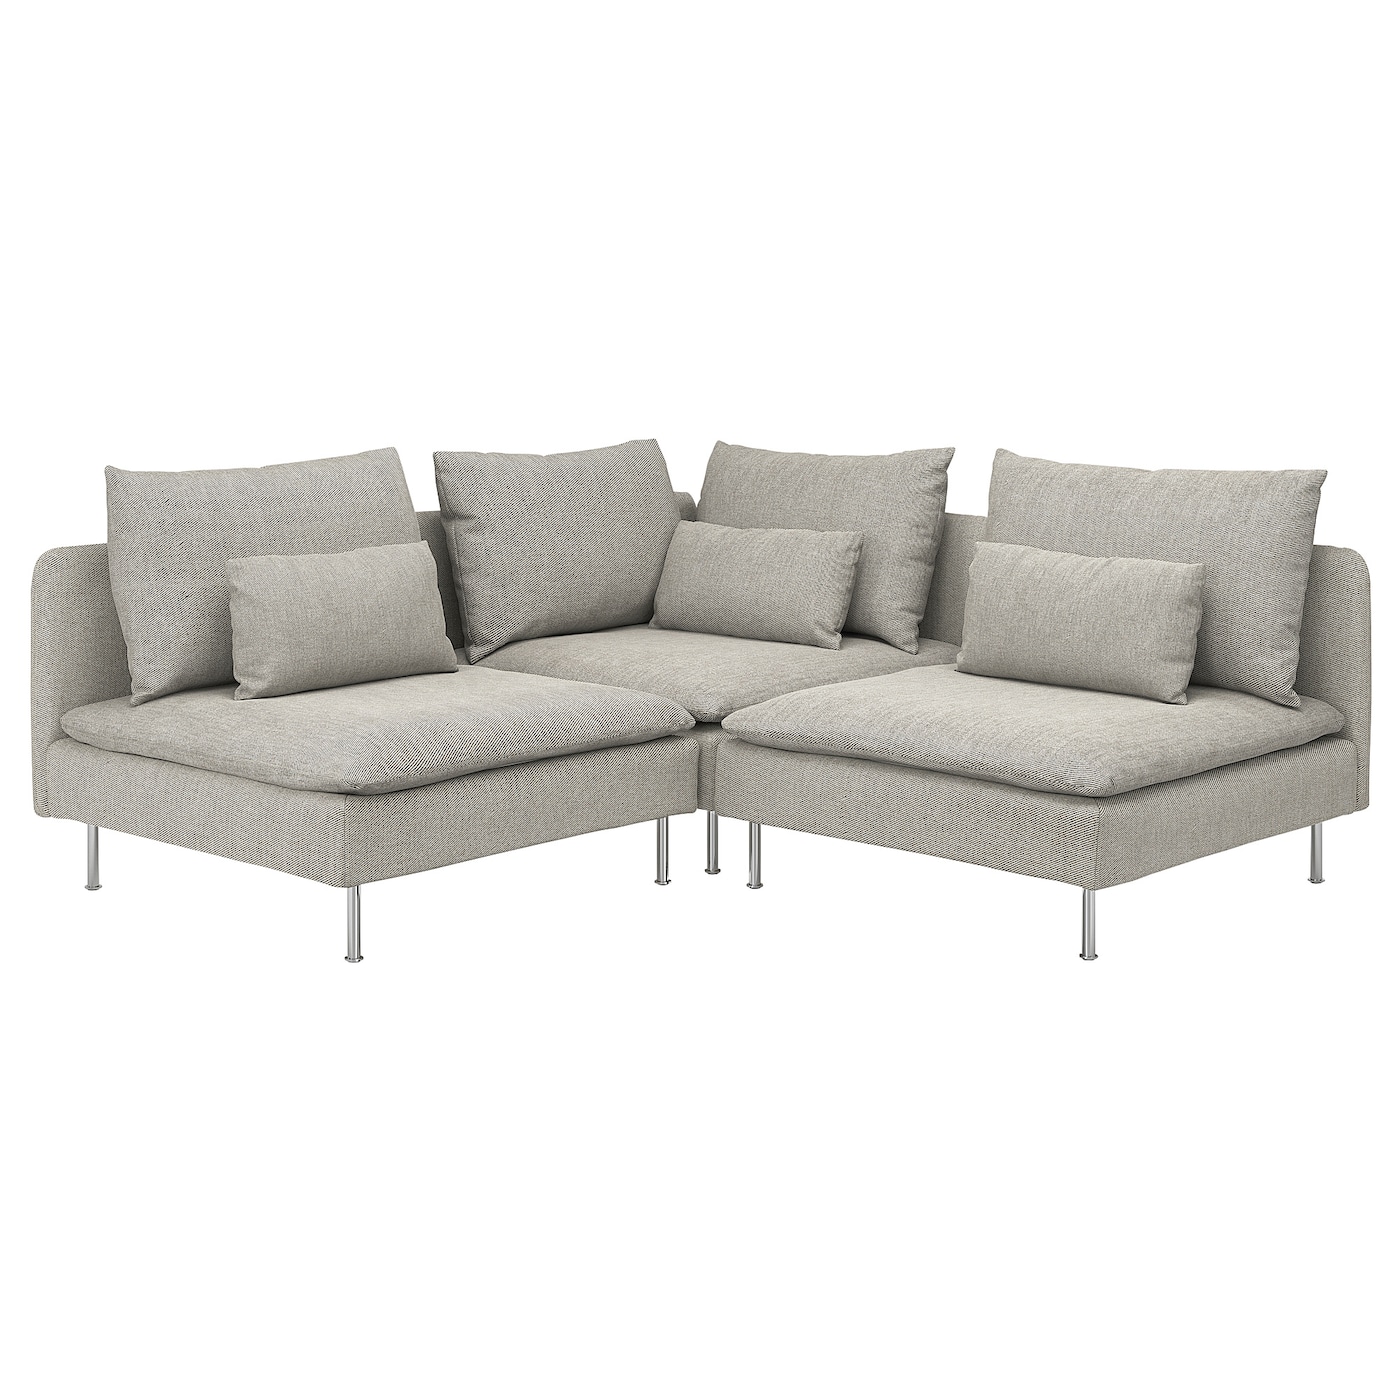 3-местный угловой диван - IKEA SÖDERHAMN/SODERHAMN, 99x192см, серый/светло-серый, СЕДЕРХАМН ИКЕА